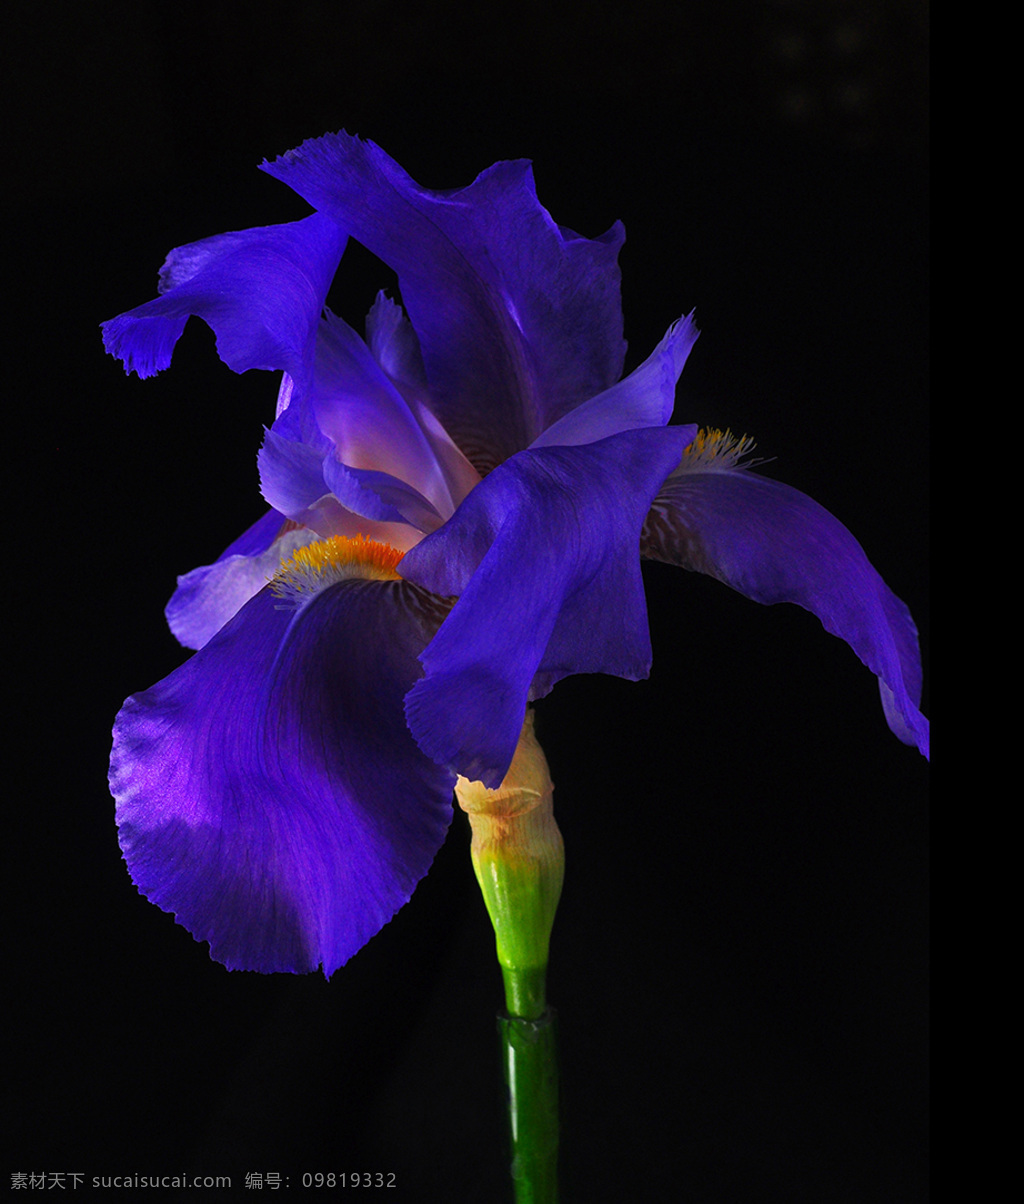 位图 植物摄影 写实花卉 花朵 鸢尾 免费素材 面料图库 服装图案 黑色